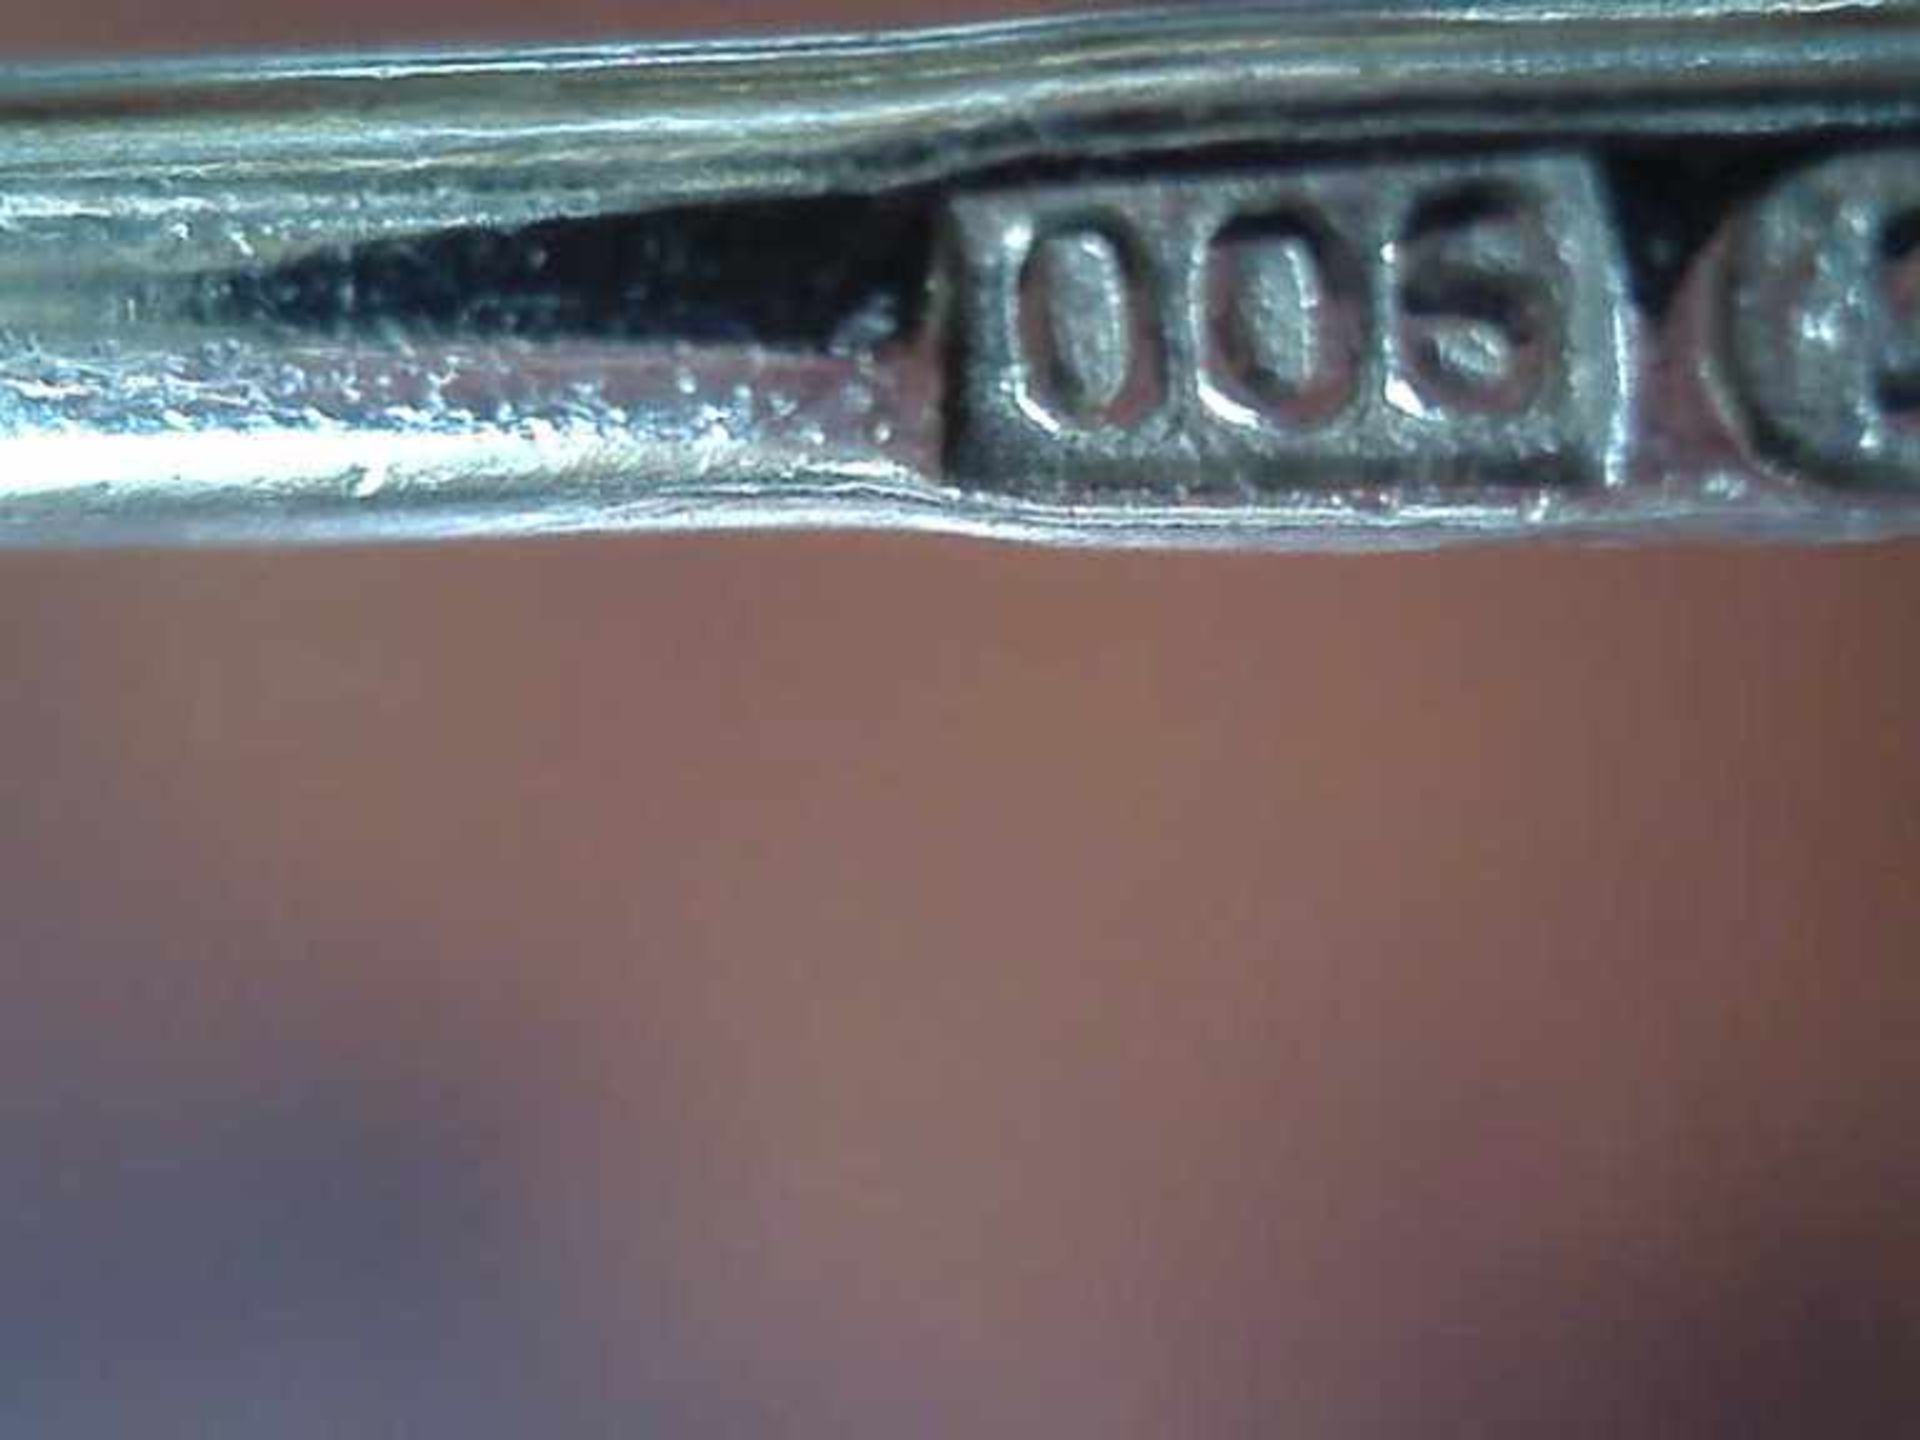 Brosche 900er Silber vergoldet, ovale Form, mit untersch. geschliffenen Granaten besetzt, Nadel - Bild 2 aus 2